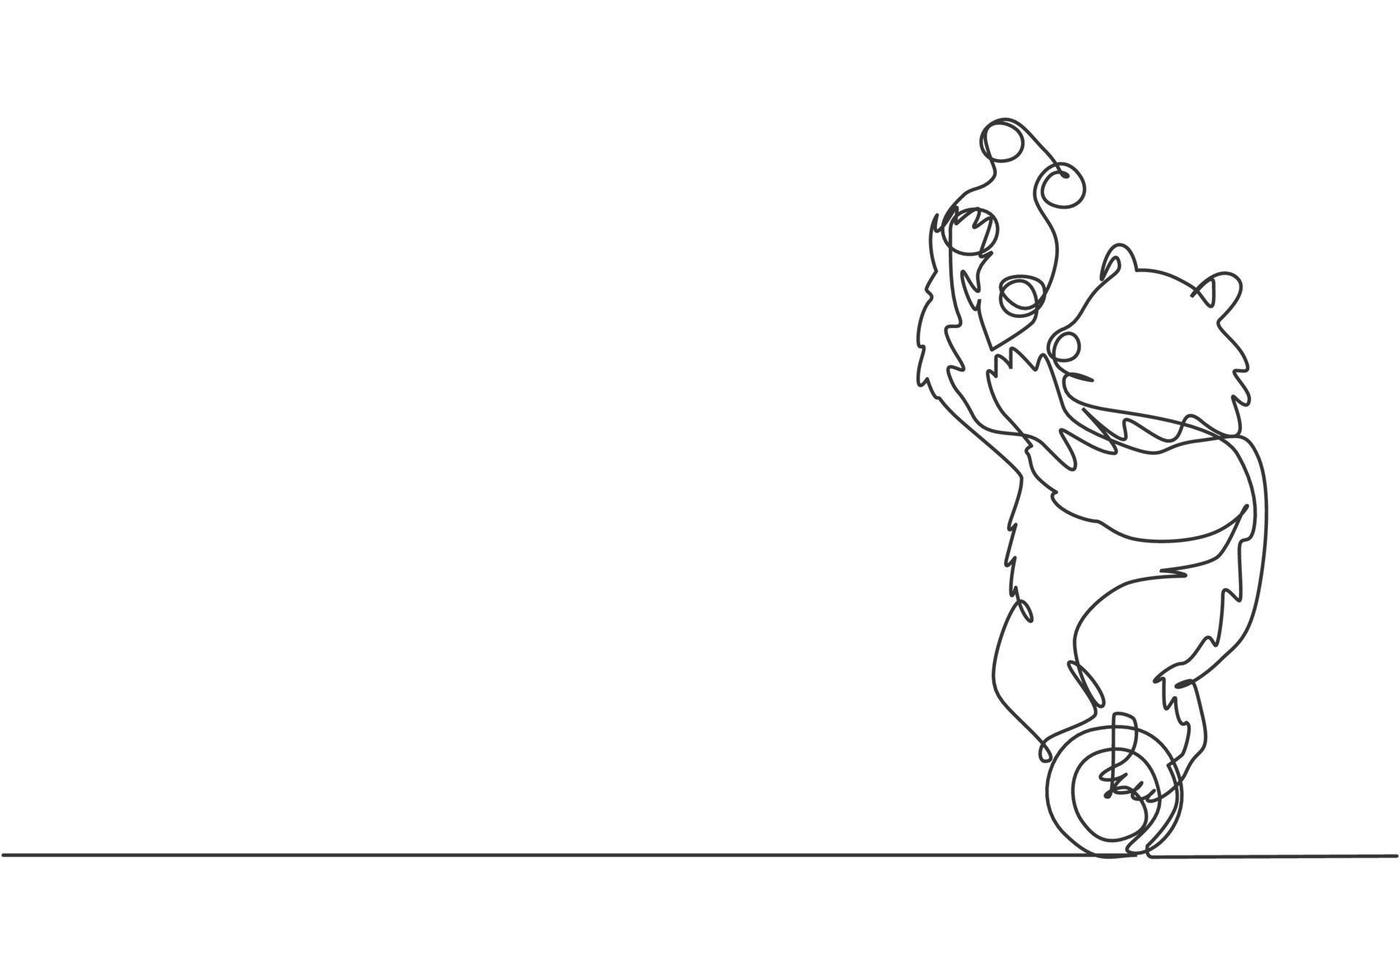 continua una linea che disegna un orso bruno addestrato che si destreggia su una bicicletta a una ruota. il pubblico è rimasto stupito dal concetto di performance dell'orso. illustrazione grafica vettoriale di disegno a linea singola.